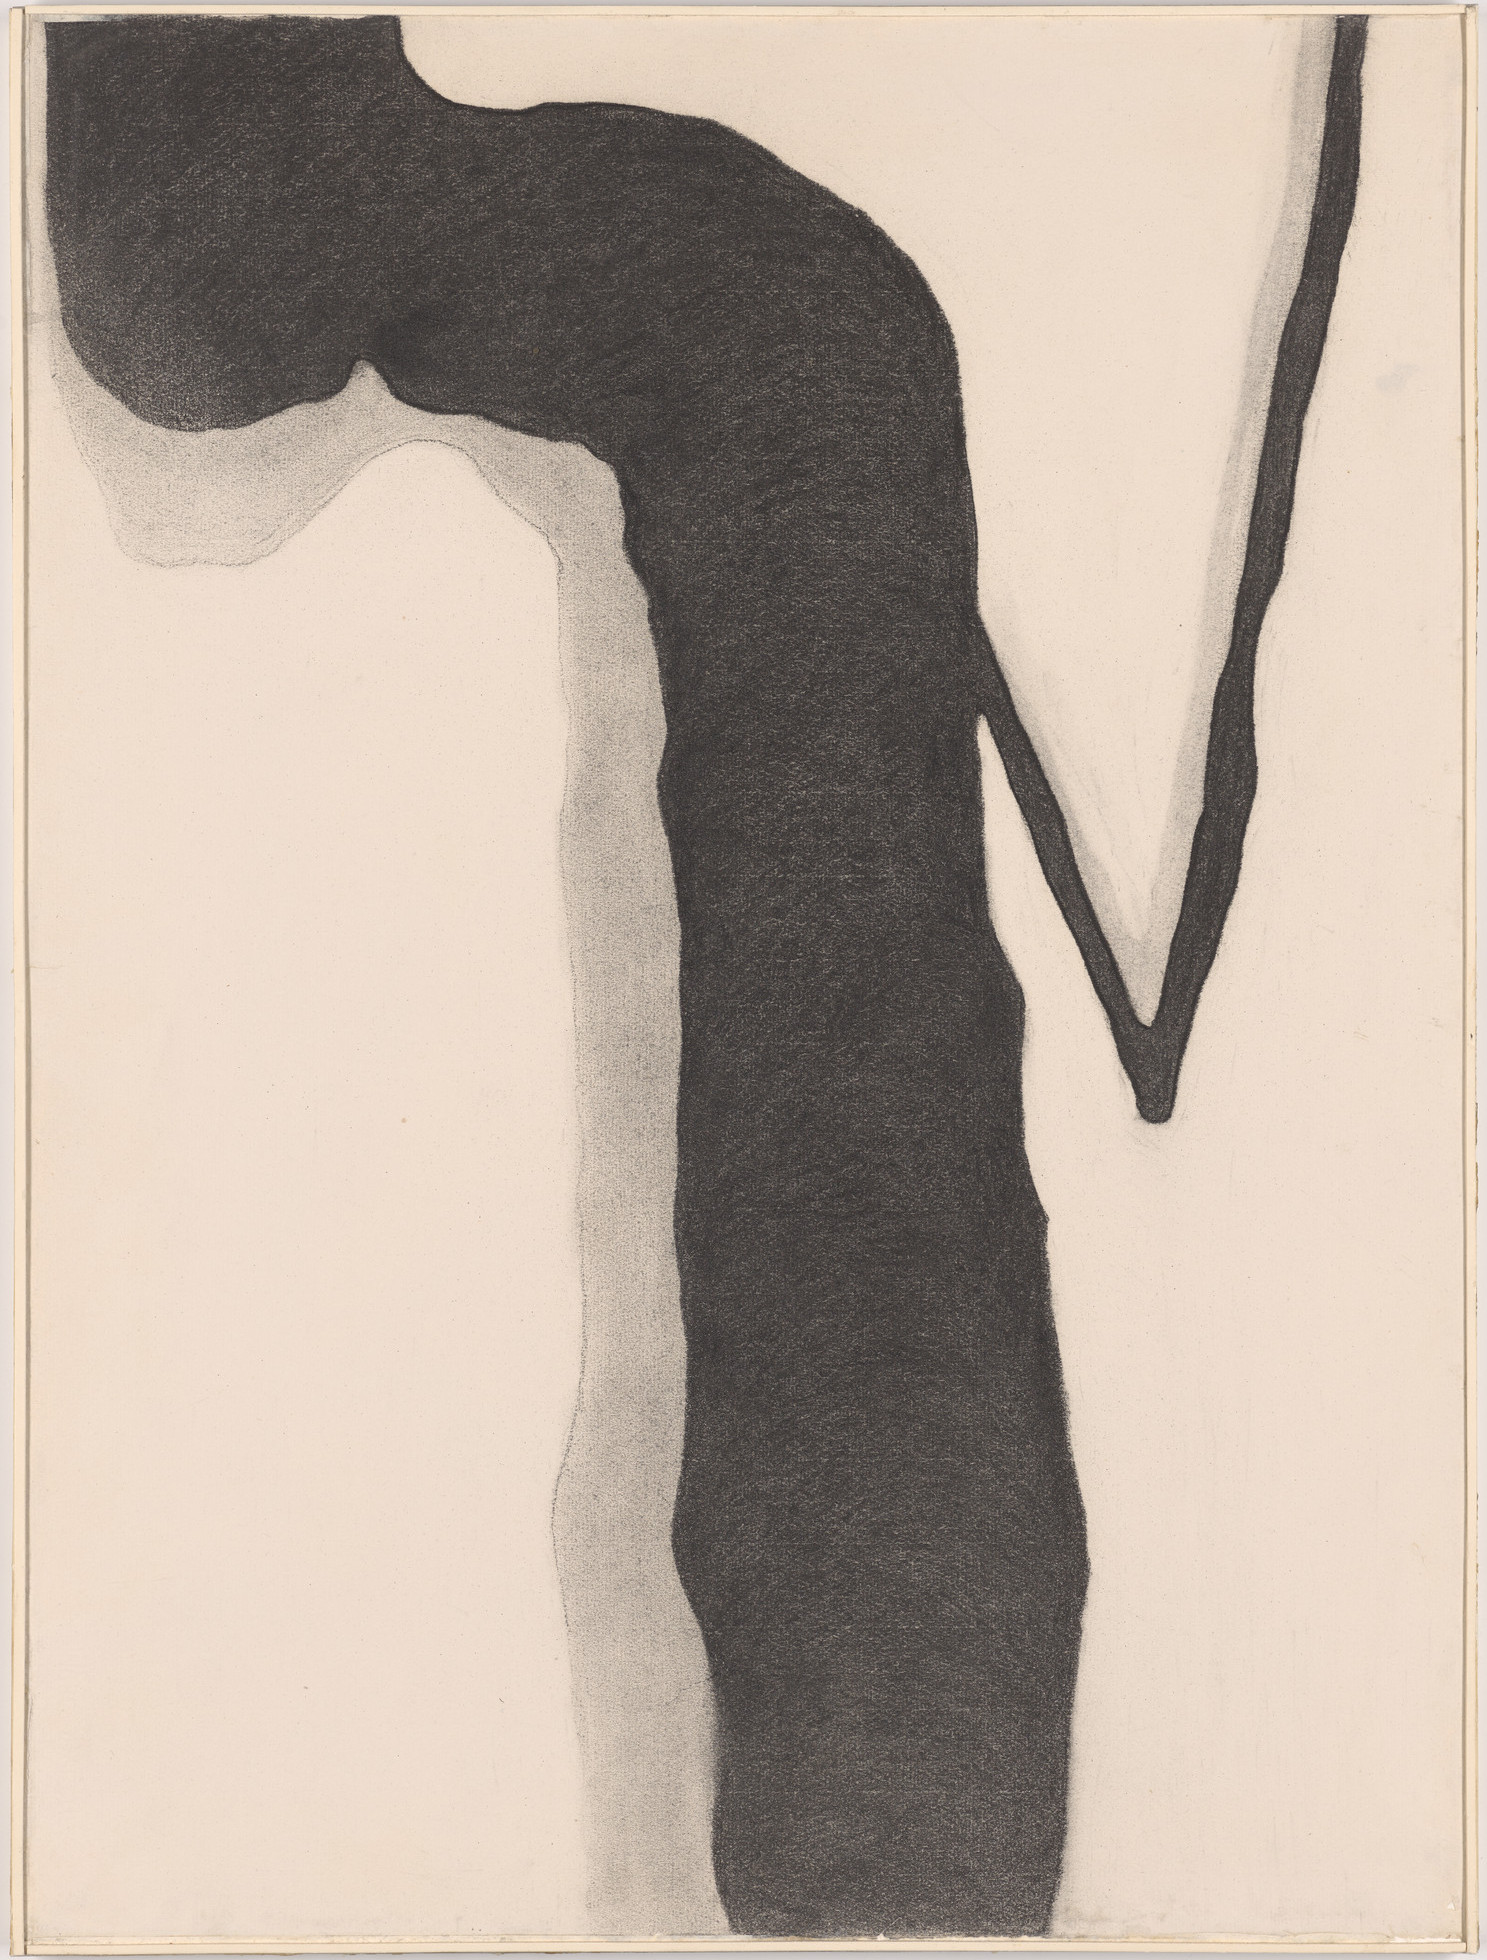 Georgia O'Keeffe. Drawing X. 1959. Source: MoMA